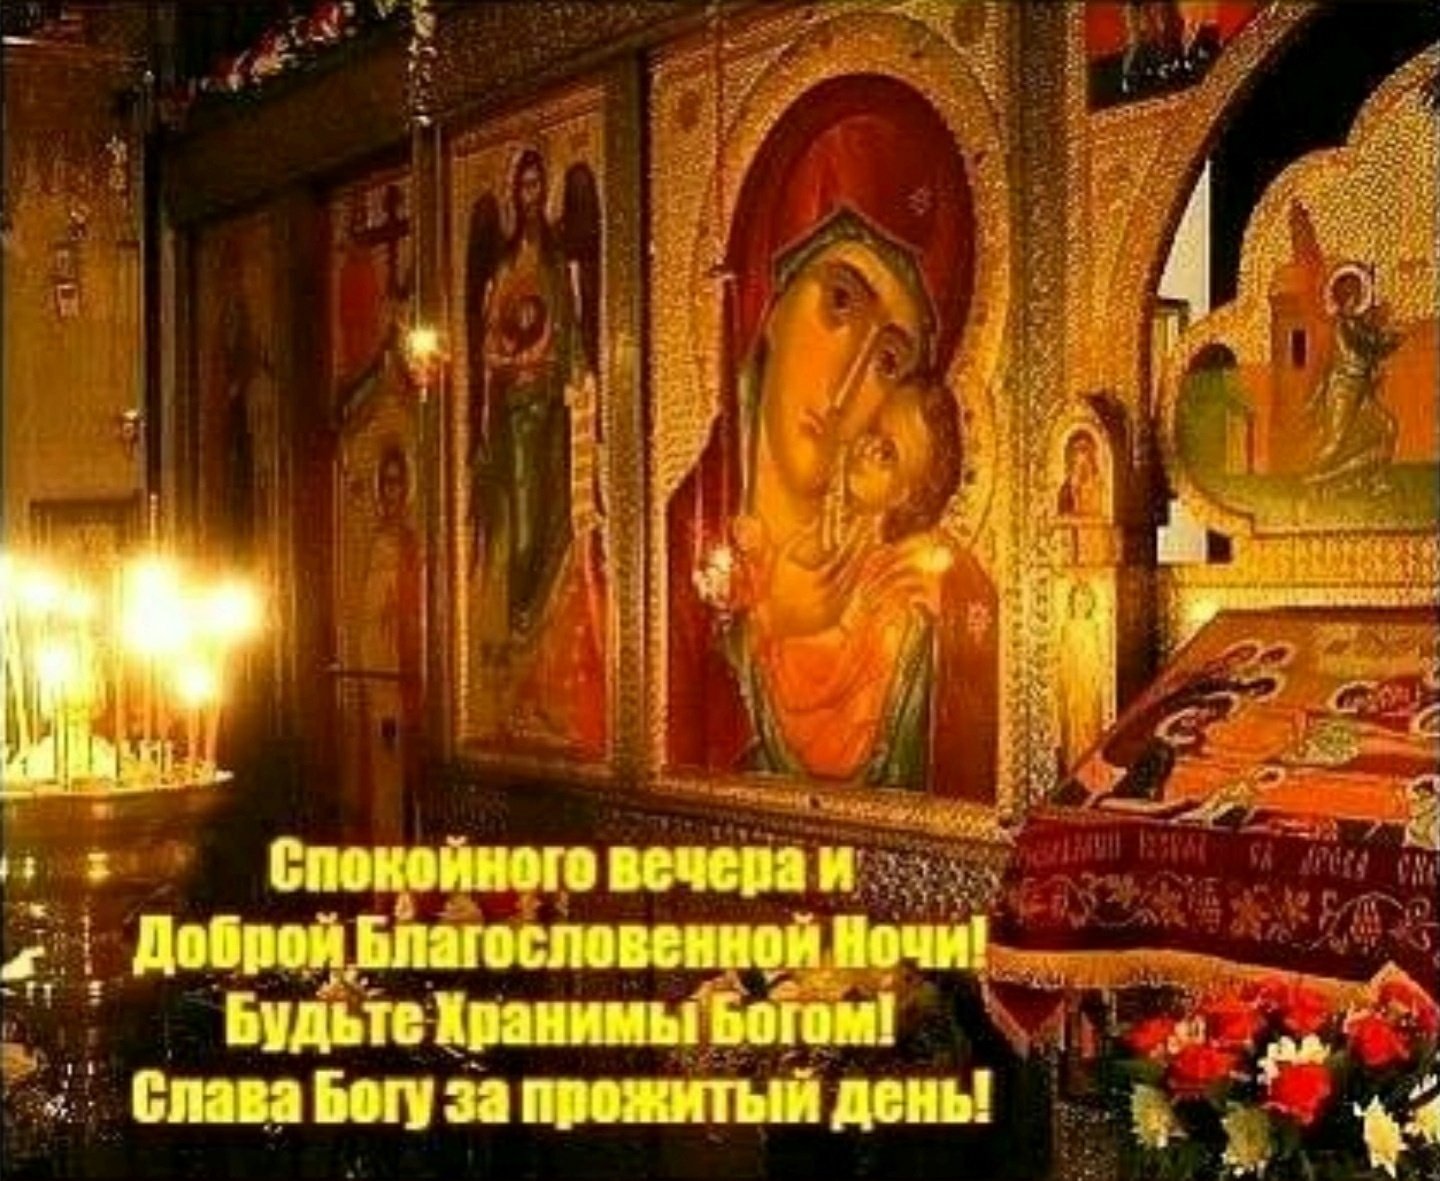 Благословляю этот вечер. Благословенной ночи. Божьего благословения на сон грядущий. Благословенной ночи православные. Доброго вечера Православие.